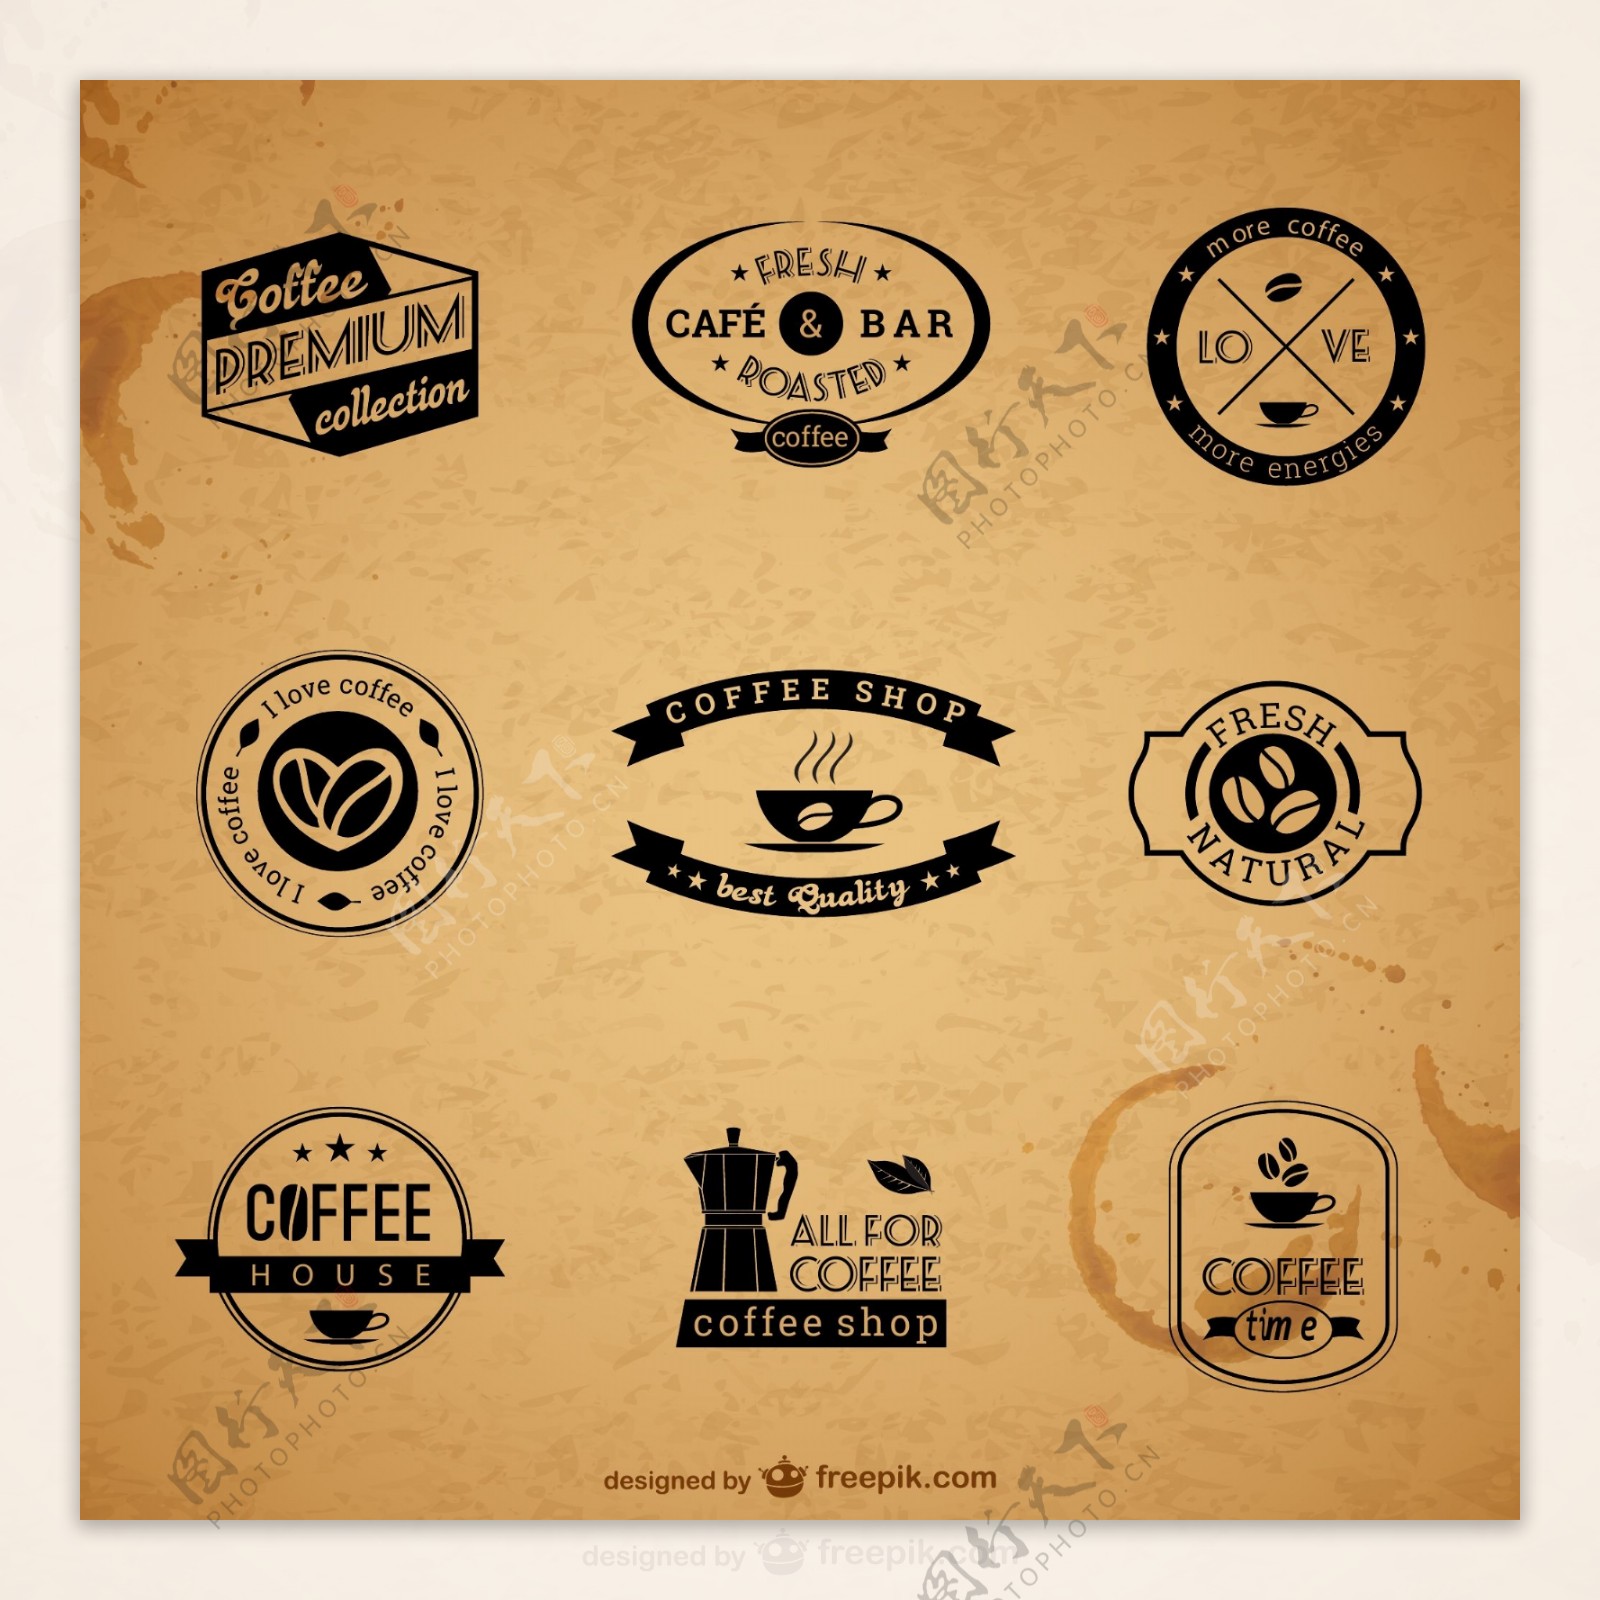 高级咖啡标签和徽章